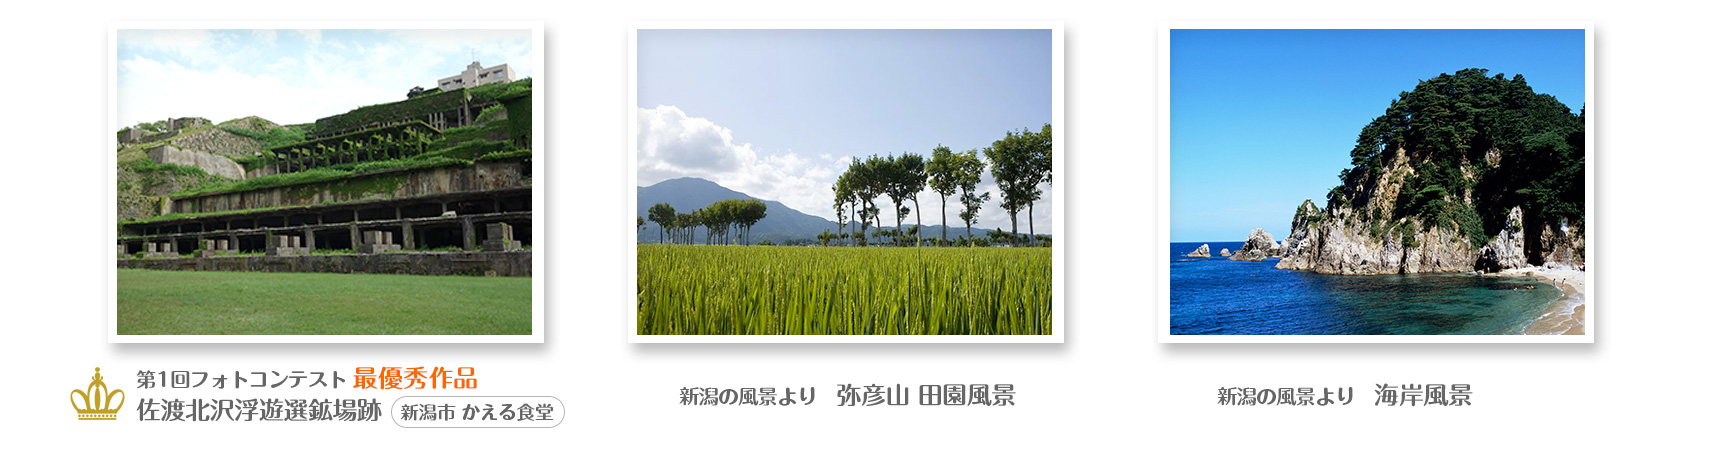 新潟の風景写真コンテスト2017イメージ